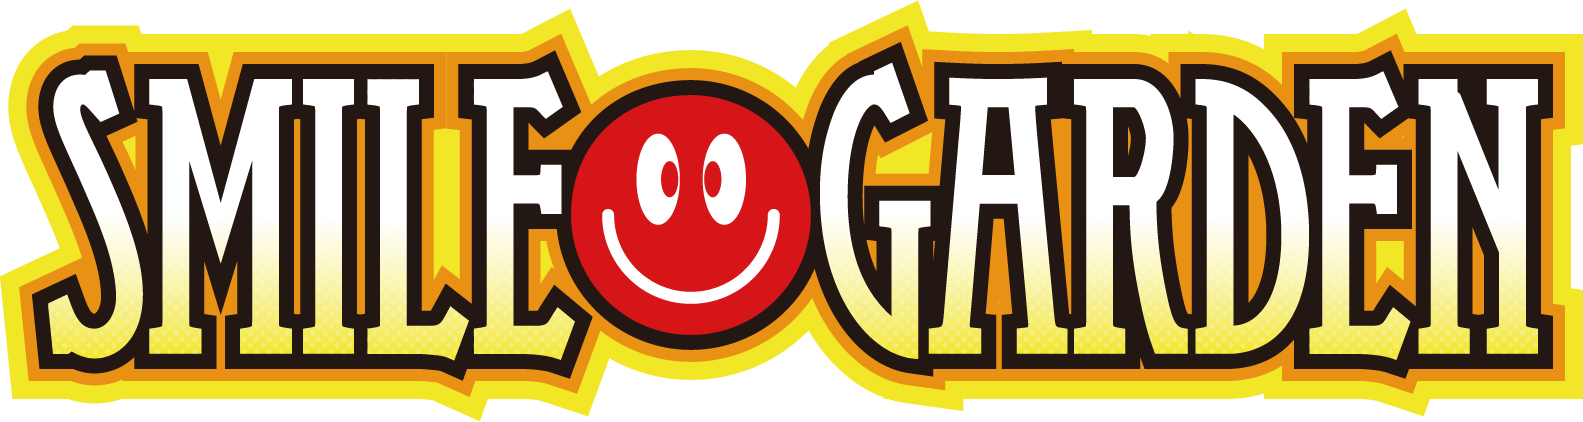 smile-garden_logo